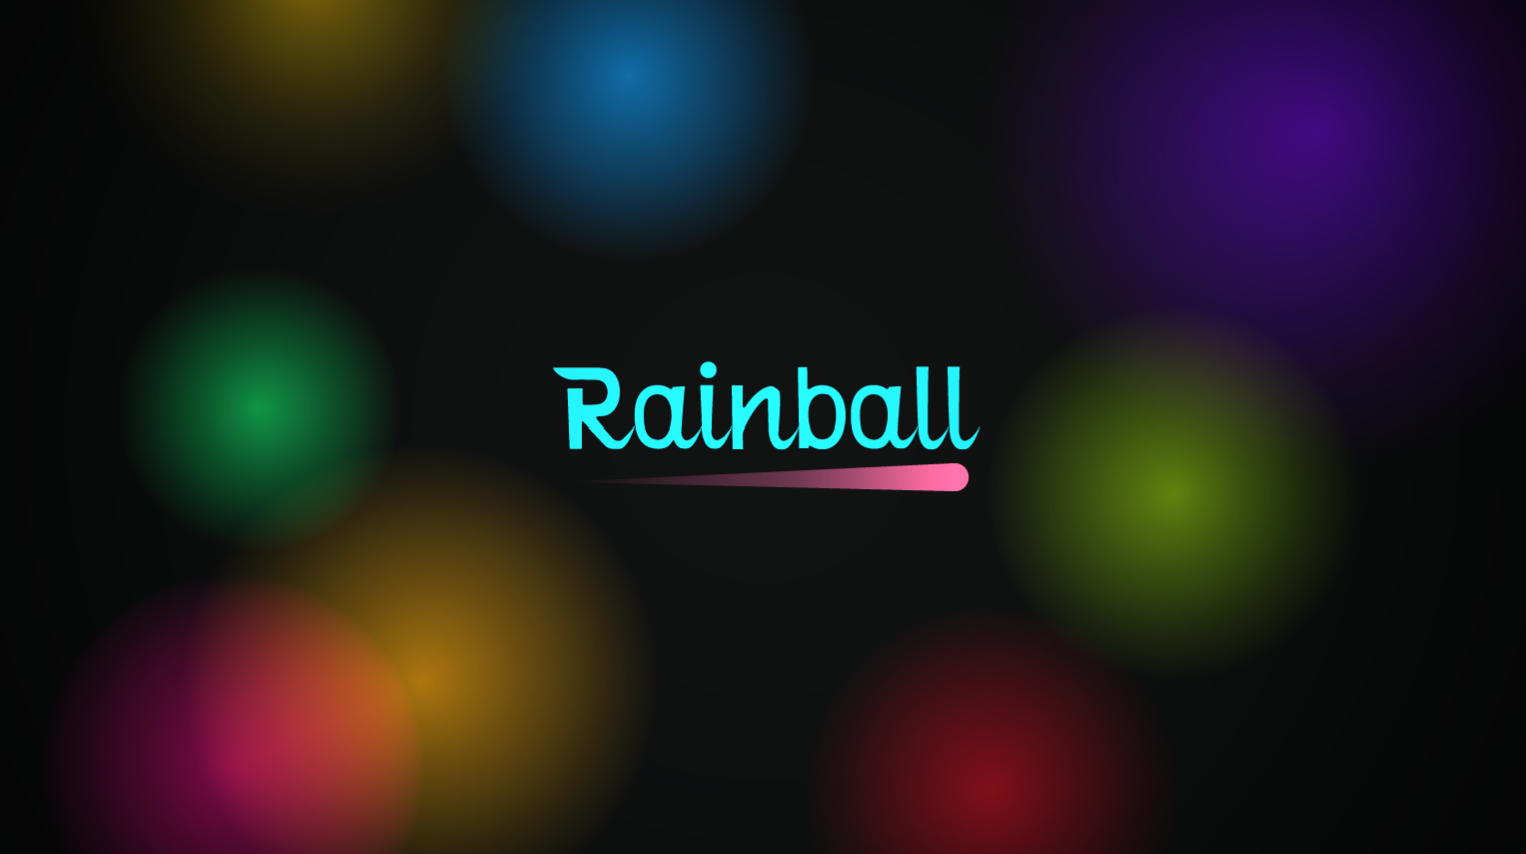 Rainball